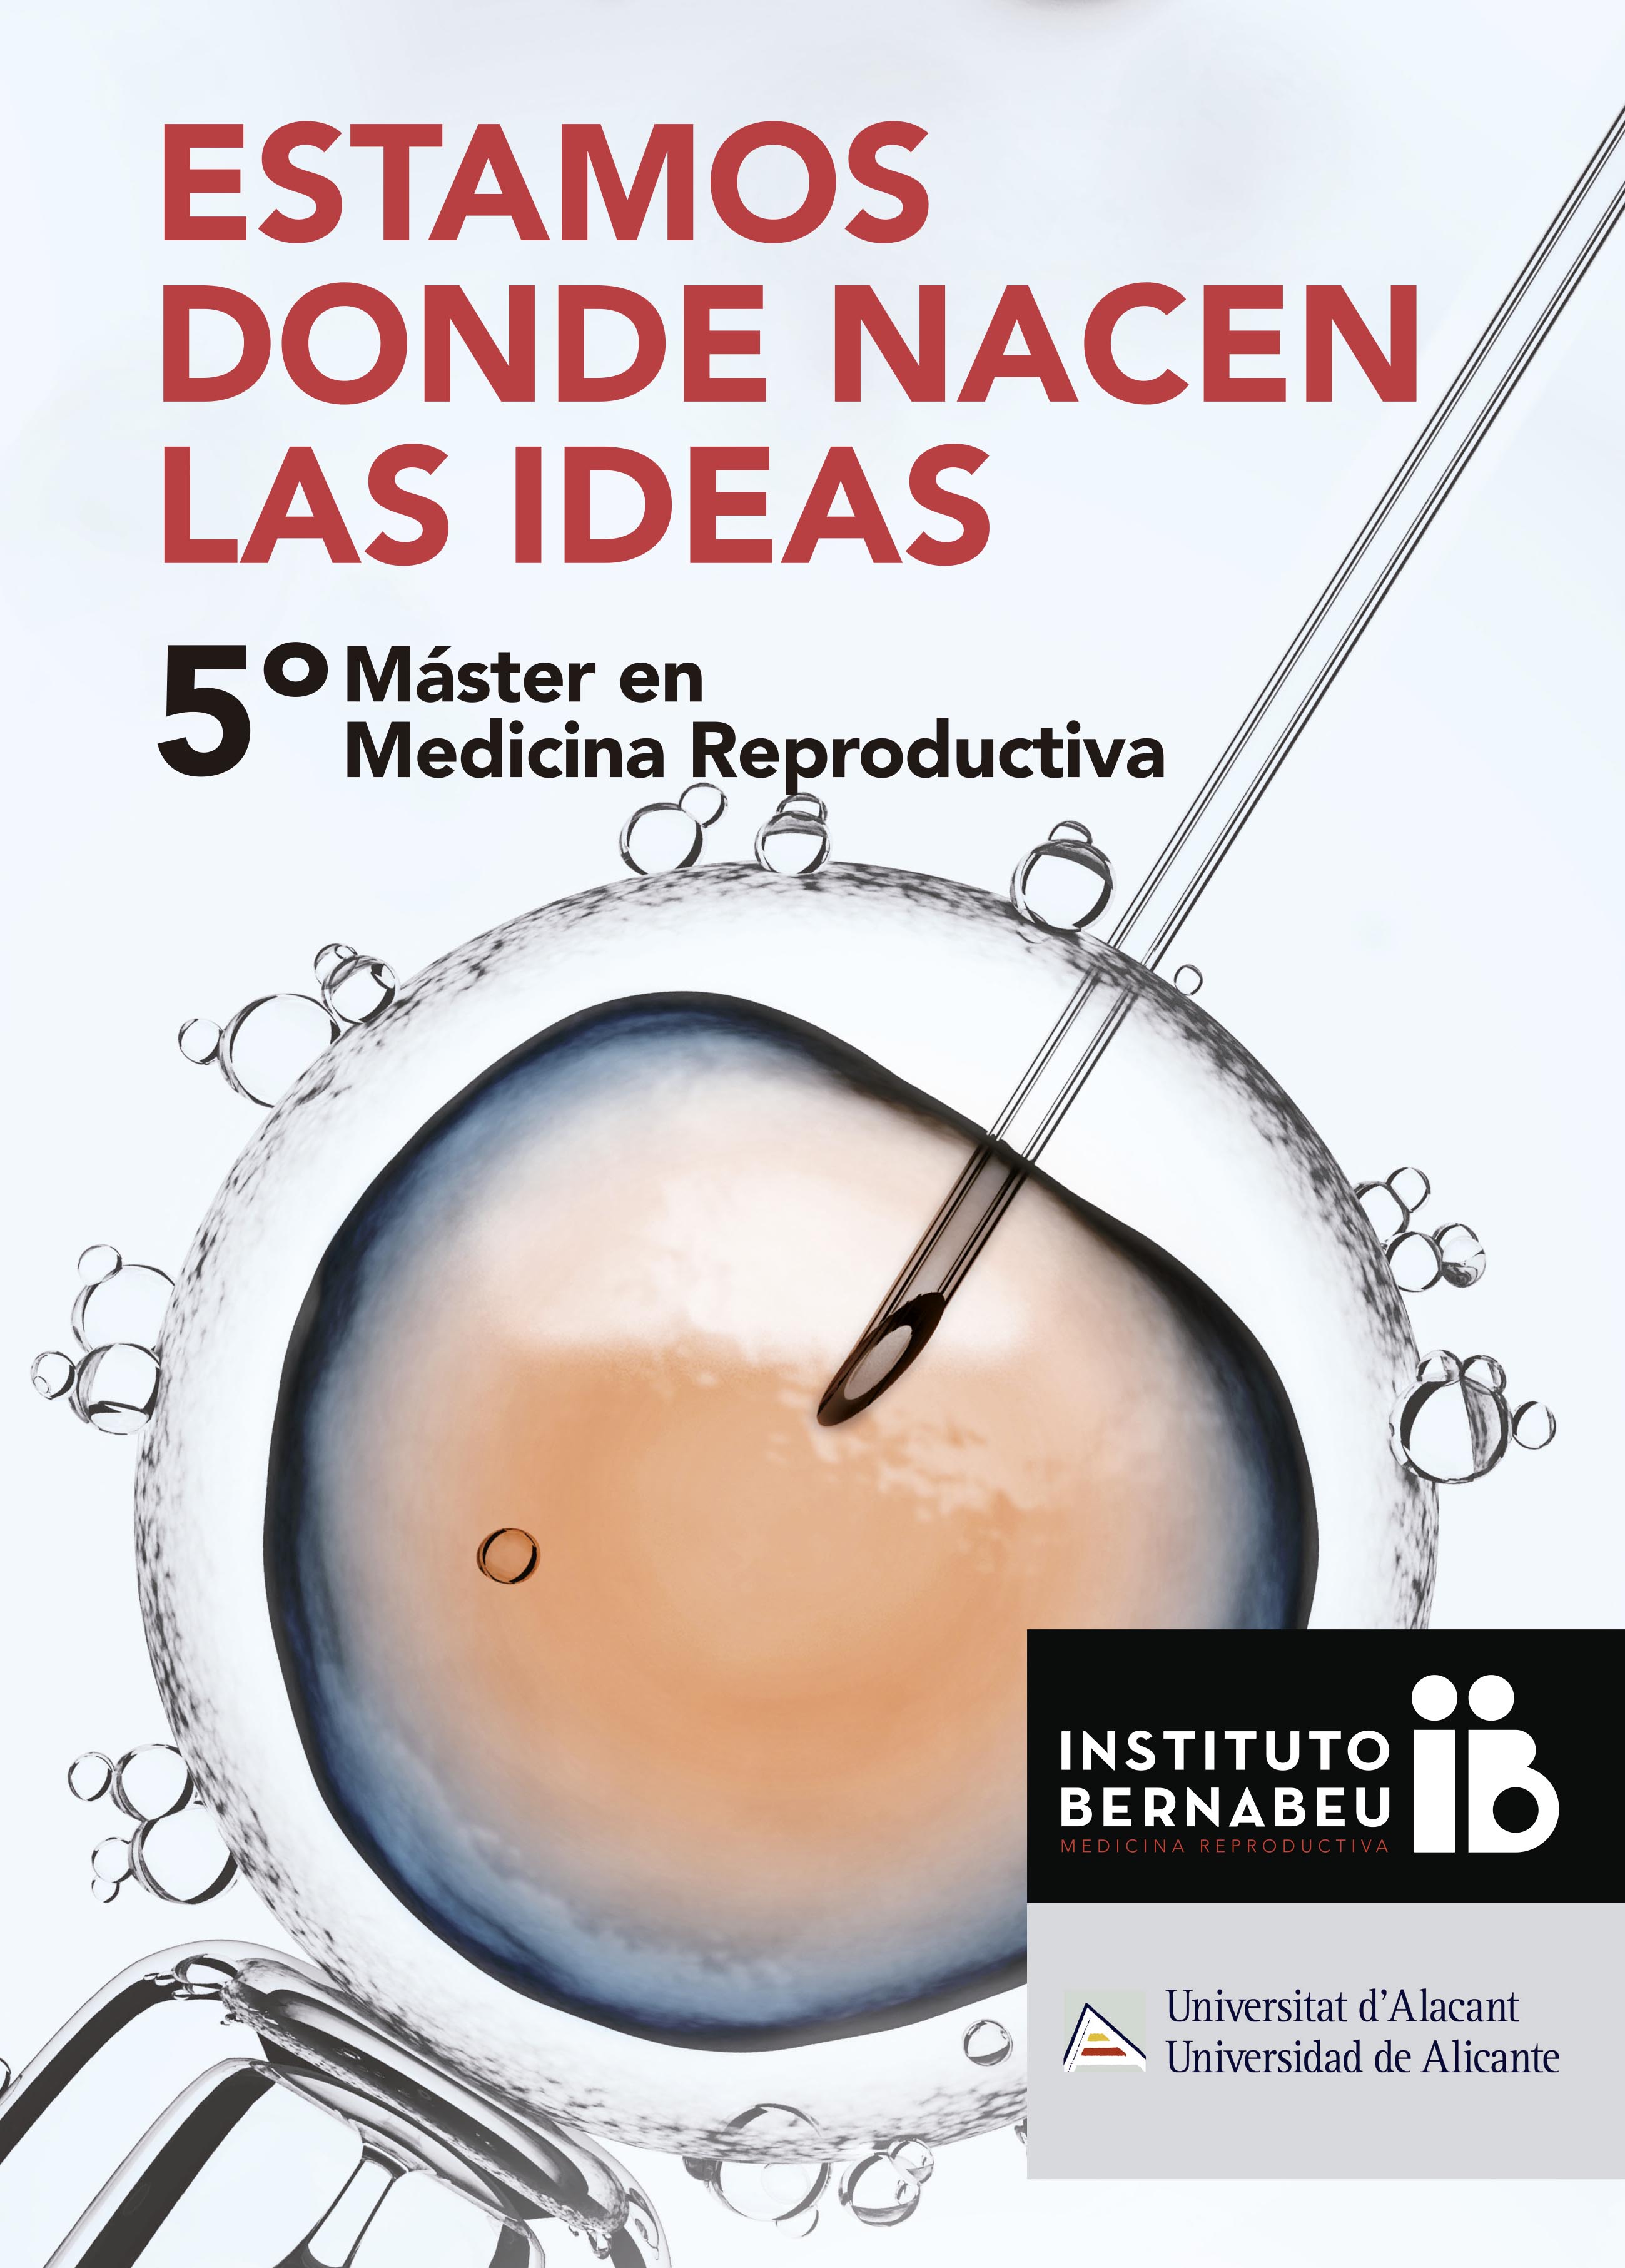 5 Магистр репродуктивной медицины «Instituto Bernabeu» в сотрудничестве с Университетом Аликанте.